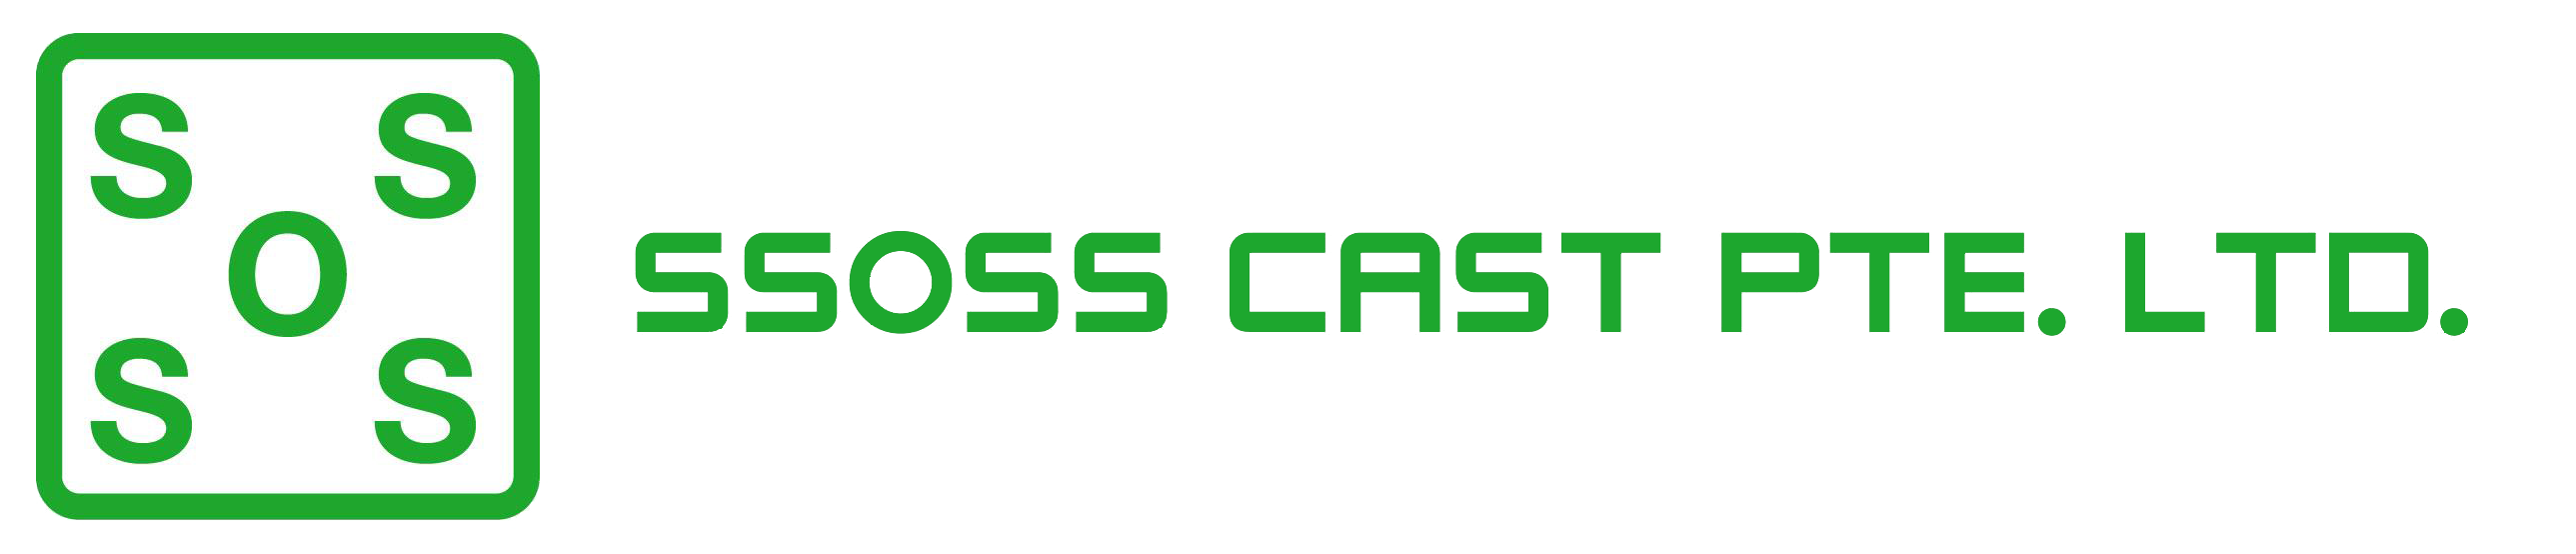 SSOSS Cast Pte Ltd